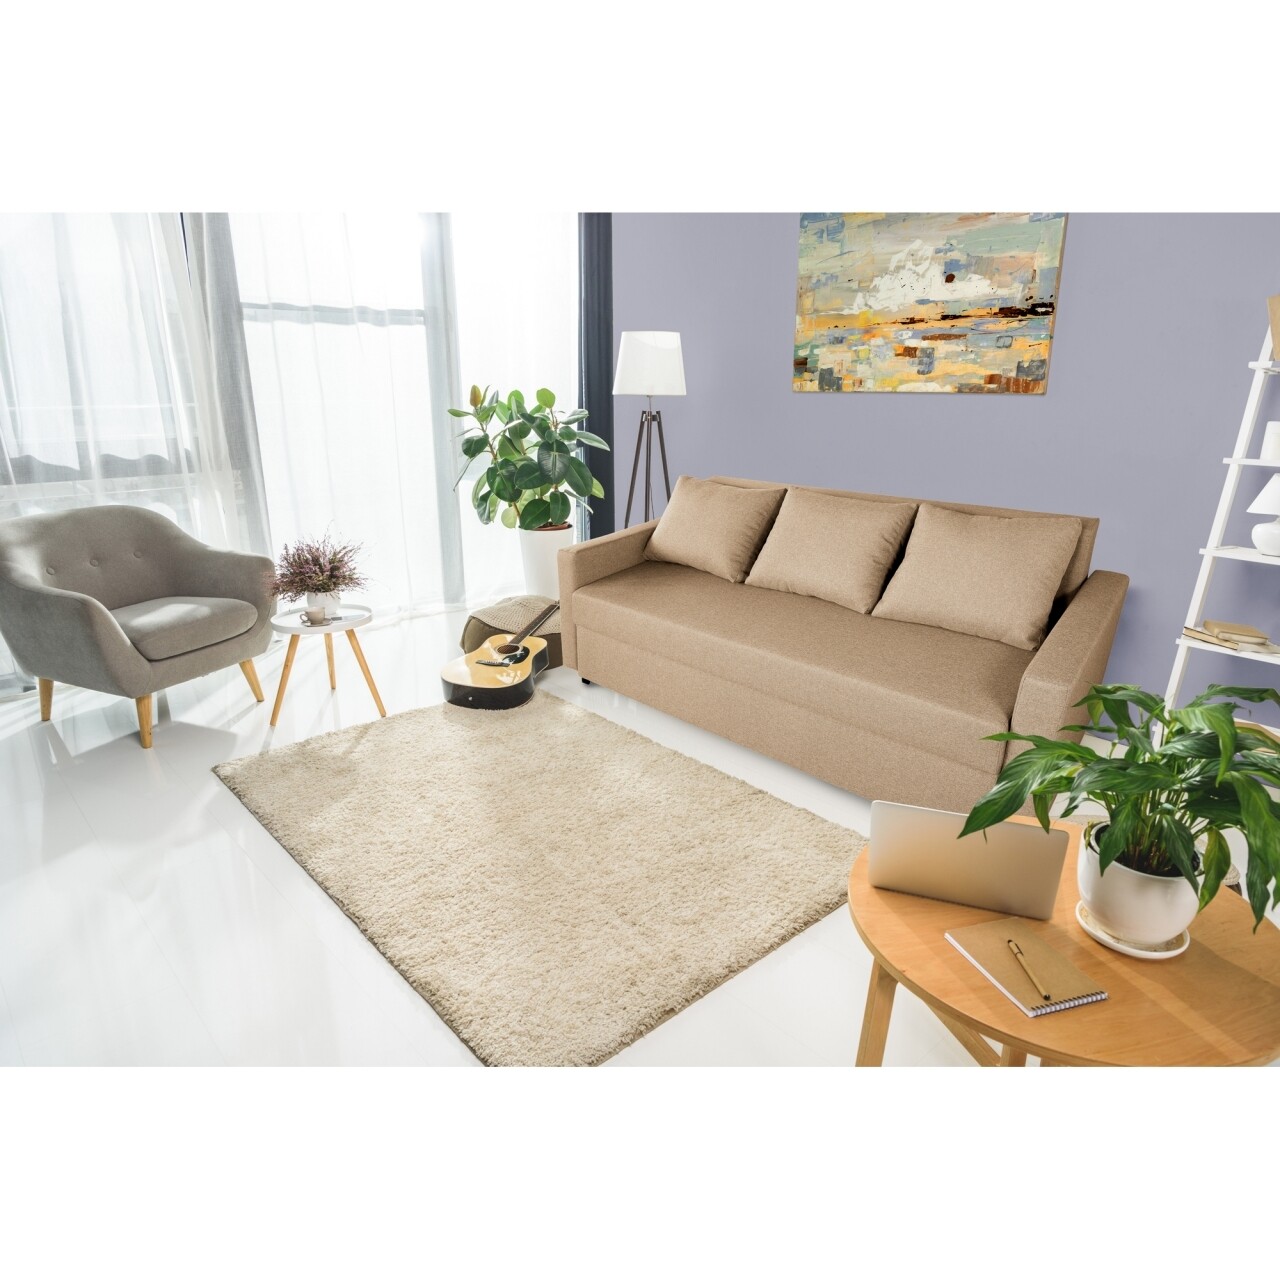 Firenze Kihúzható kanapé, Cappuccinobarna 218x85x85 cm + tárolóládával